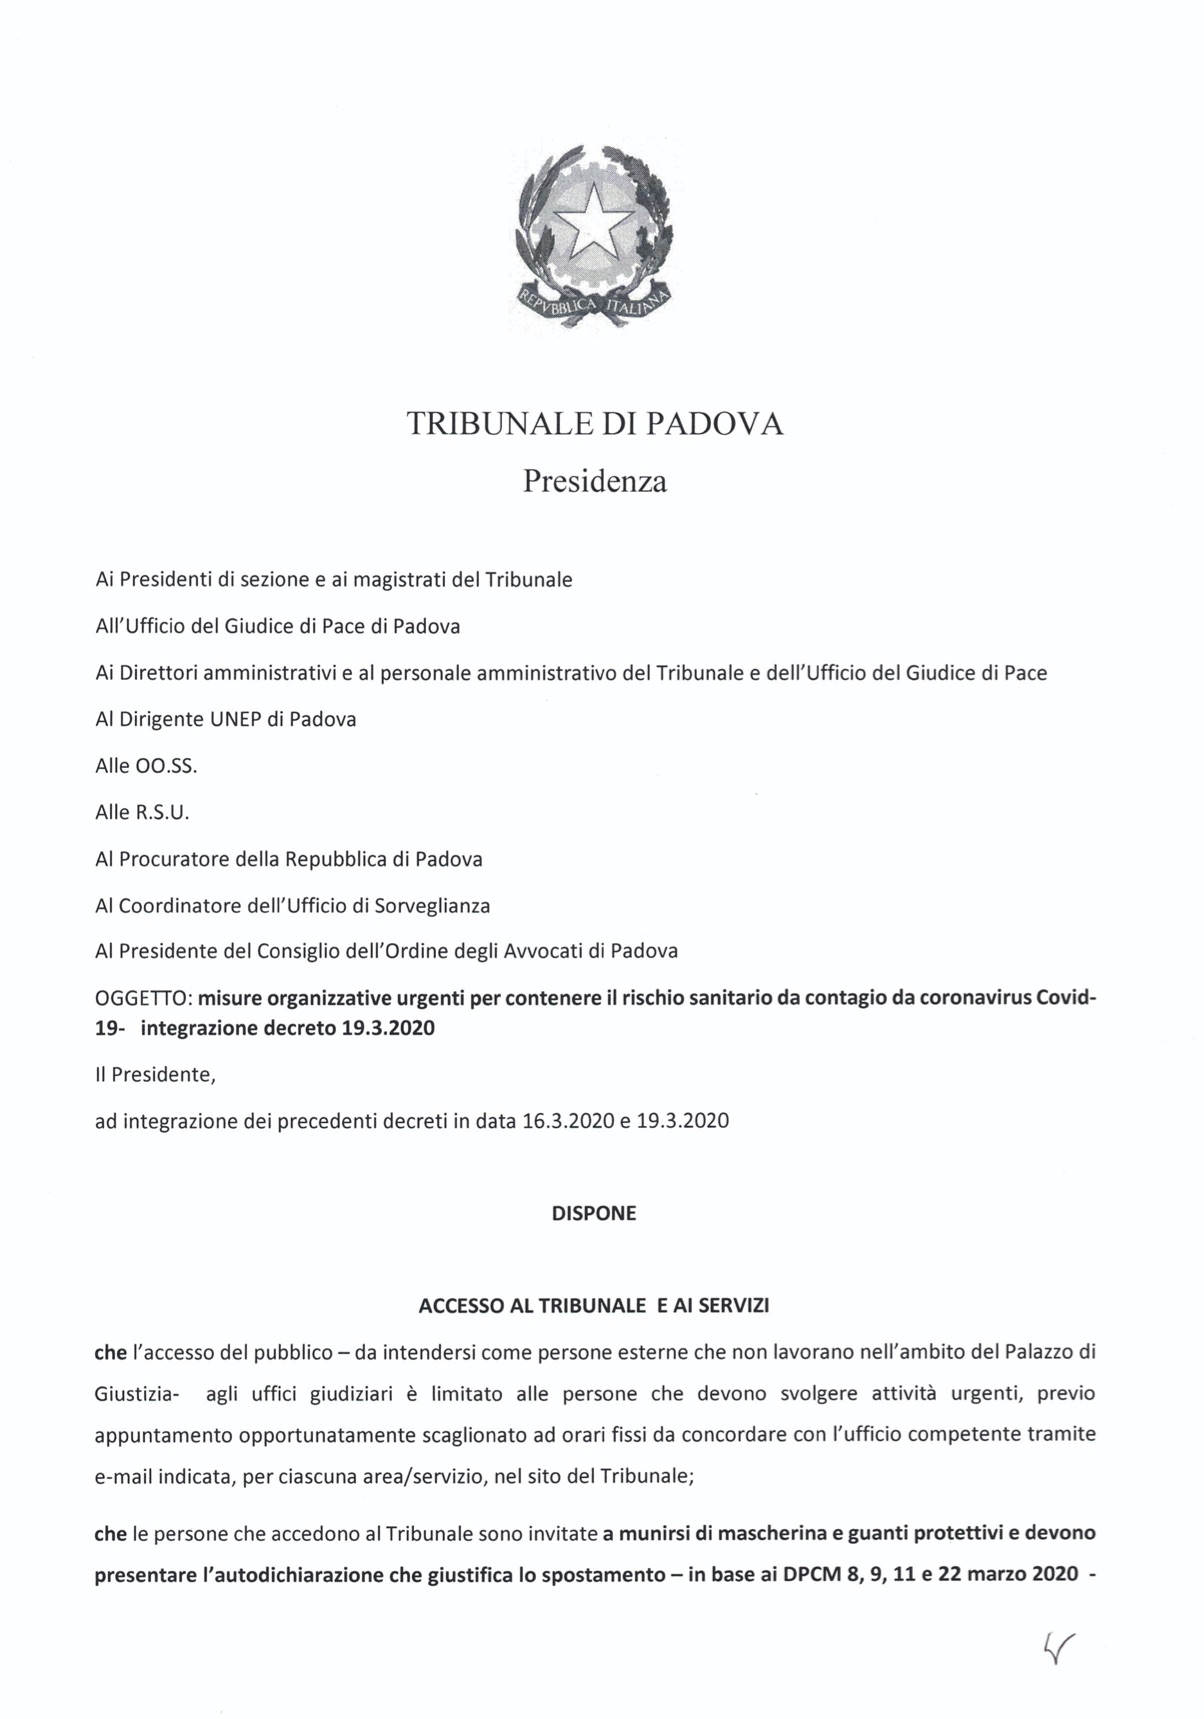 Provvedimento Presidente Tribunale di Padova 31.03.2020 - Misure organizzative urgenti per contenere il rischio sanitario da contagio Covid-19 - Integrazione decreto 19.03.2020